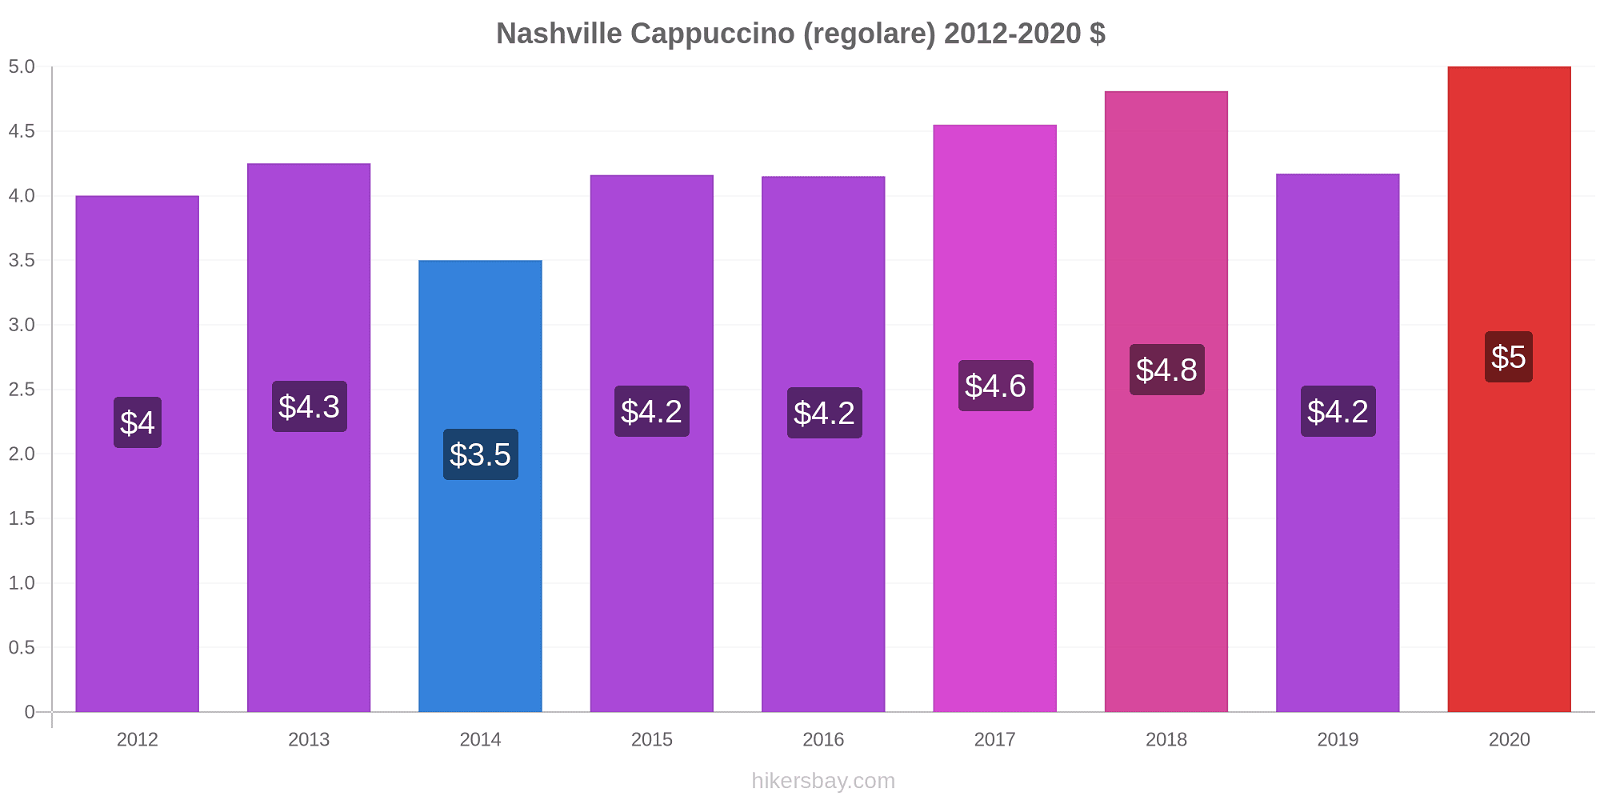 Nashville variazioni di prezzo Cappuccino (normale) hikersbay.com